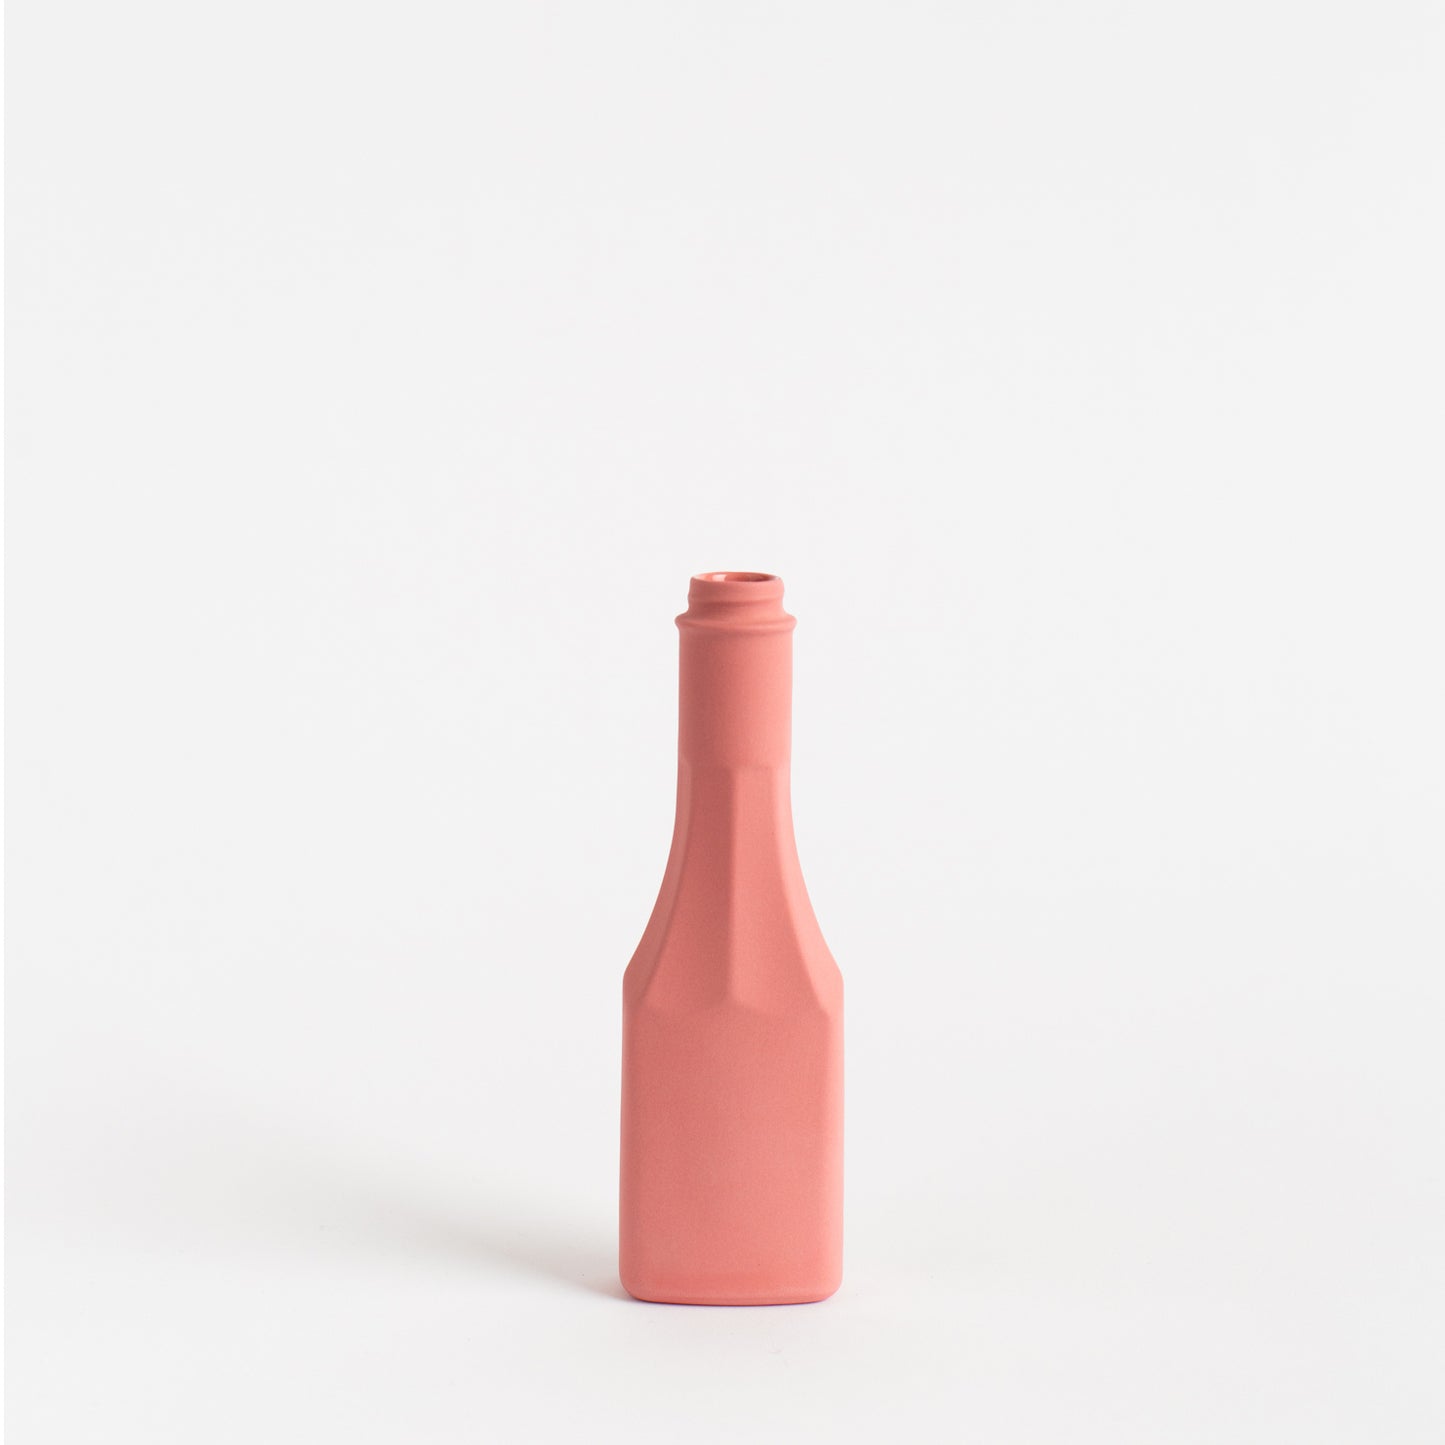 Porcelain Bottle Vase #25 - blush